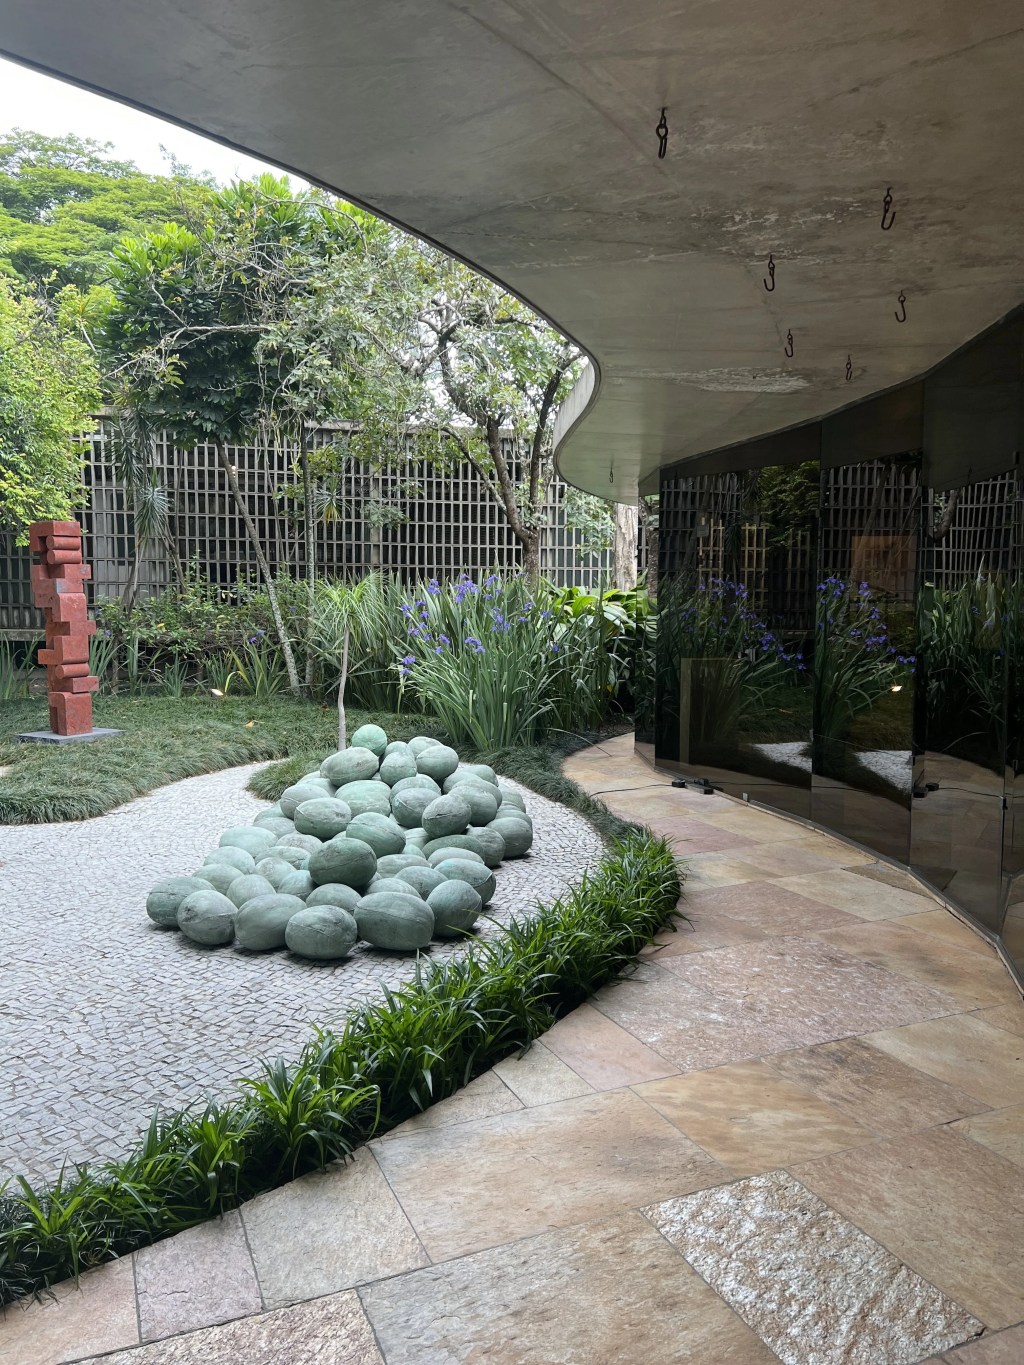 Casa projetada por Oscar Niemeyer em 1962 e que abriga a exposição ABERTO 1, em São Paulo.